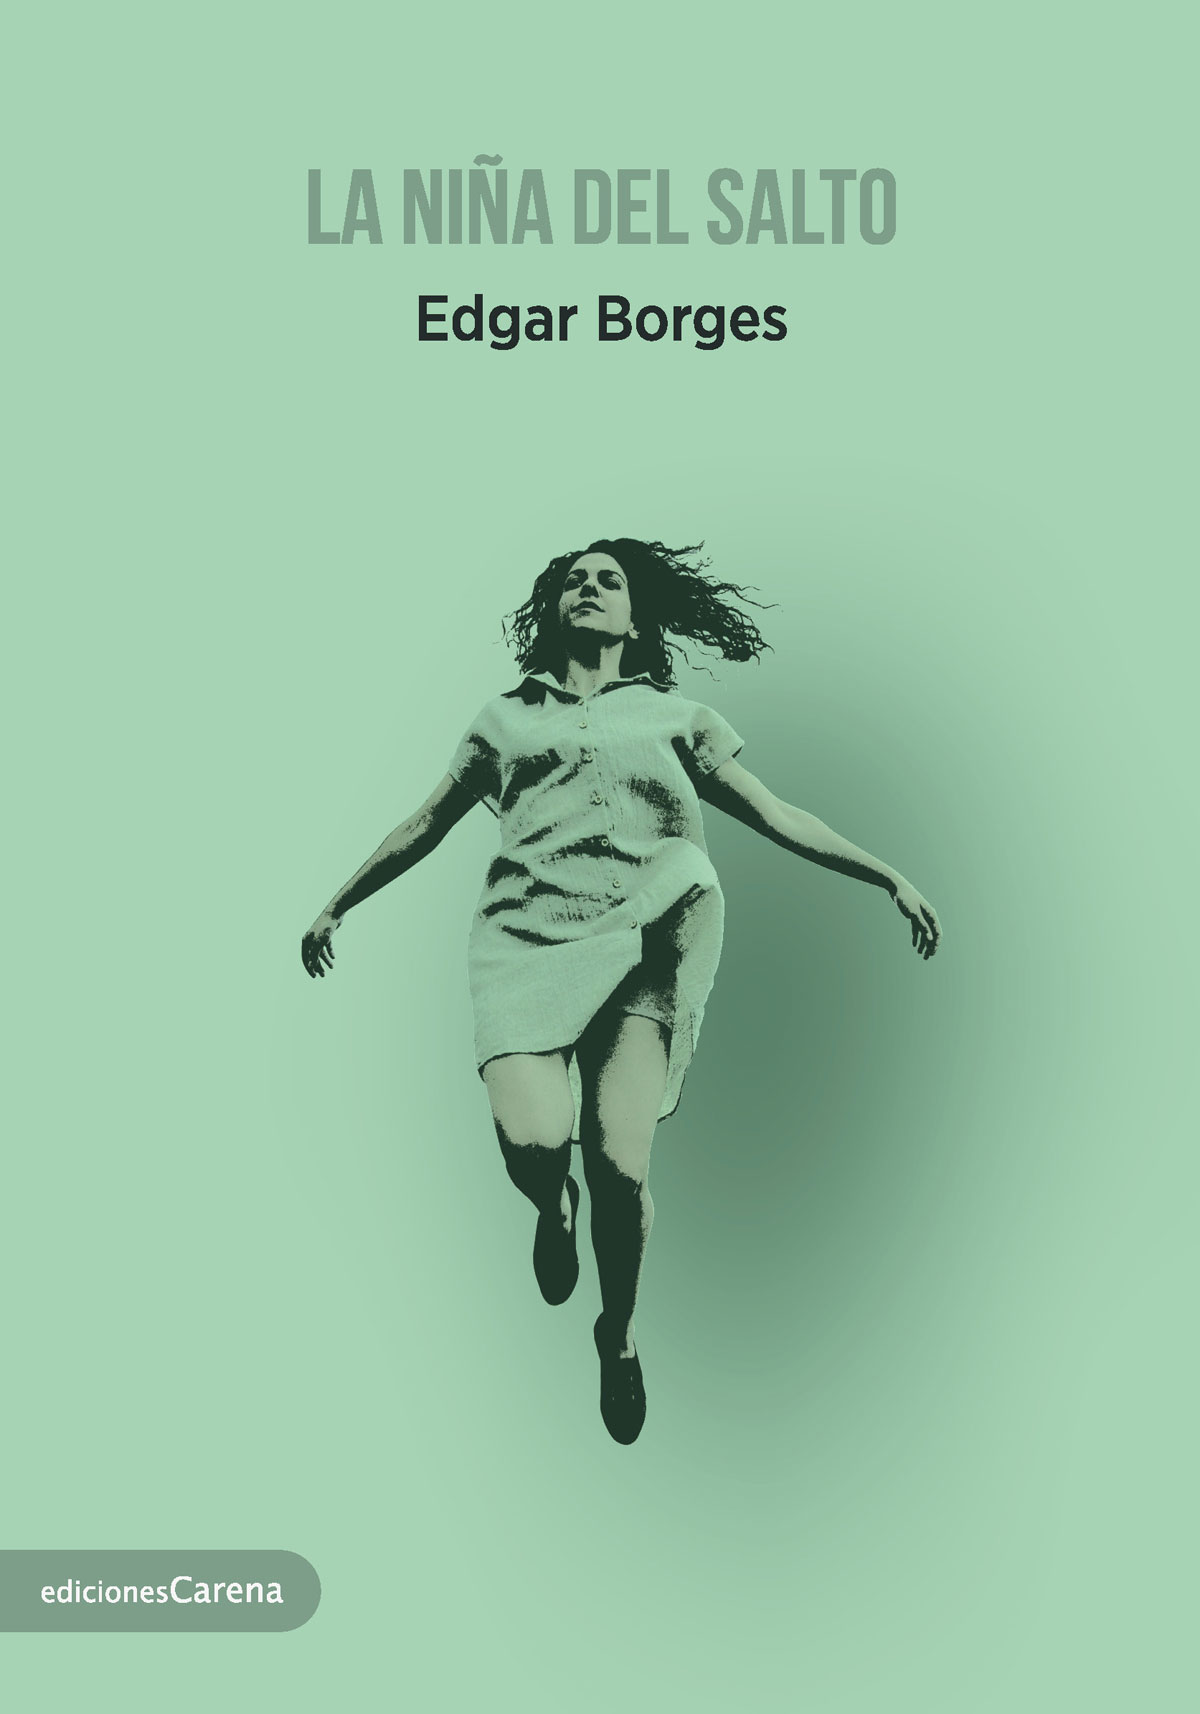 Cubierta del libro La niña del Salto de Edgar Borges.